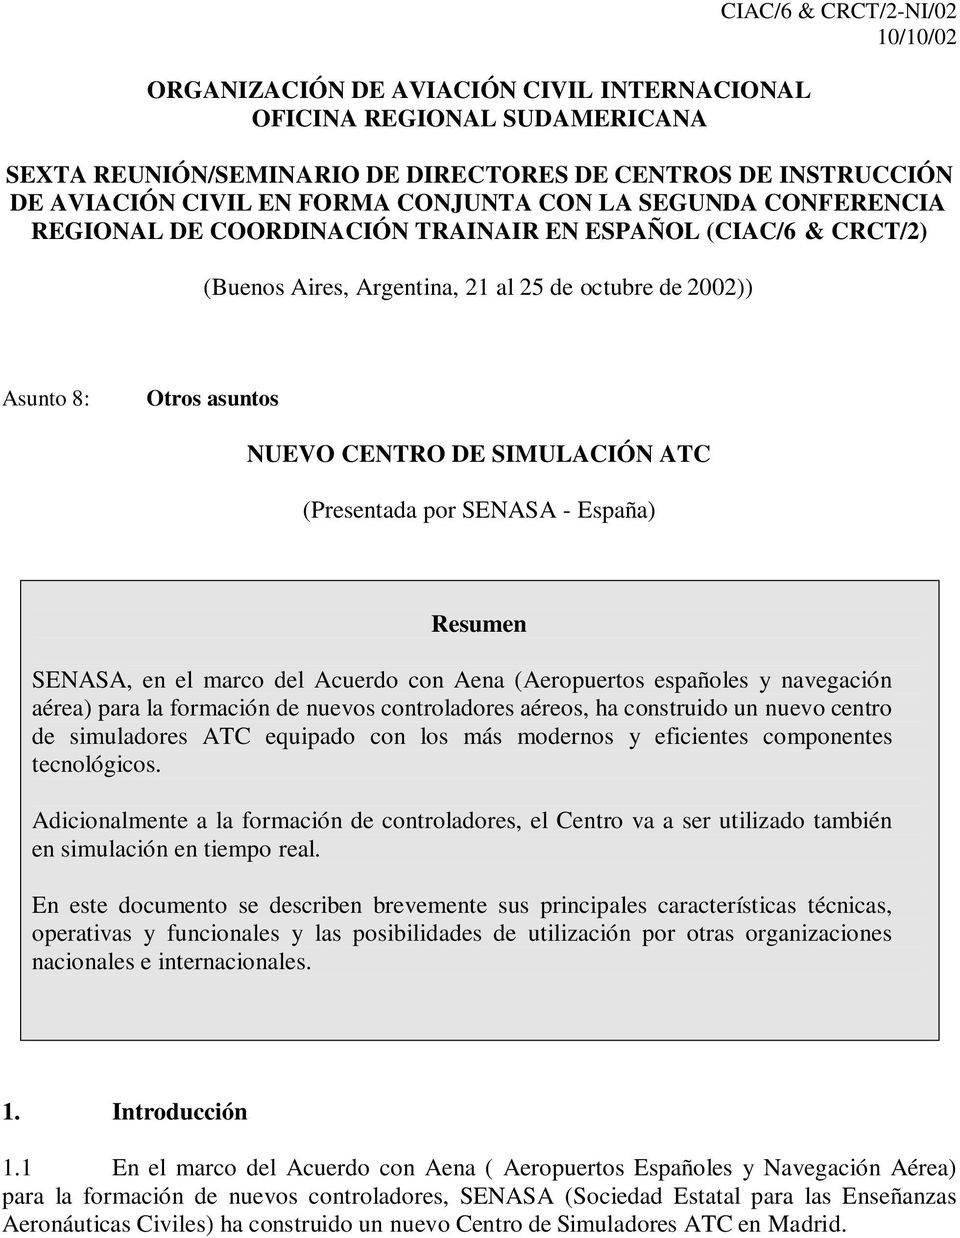 SIMULACIÓN ATC (Presentada por SENASA - España) Resumen SENASA, en el marco del Acuerdo con Aena (Aeropuertos españoles y navegación aérea) para la formación de nuevos controladores aéreos, ha